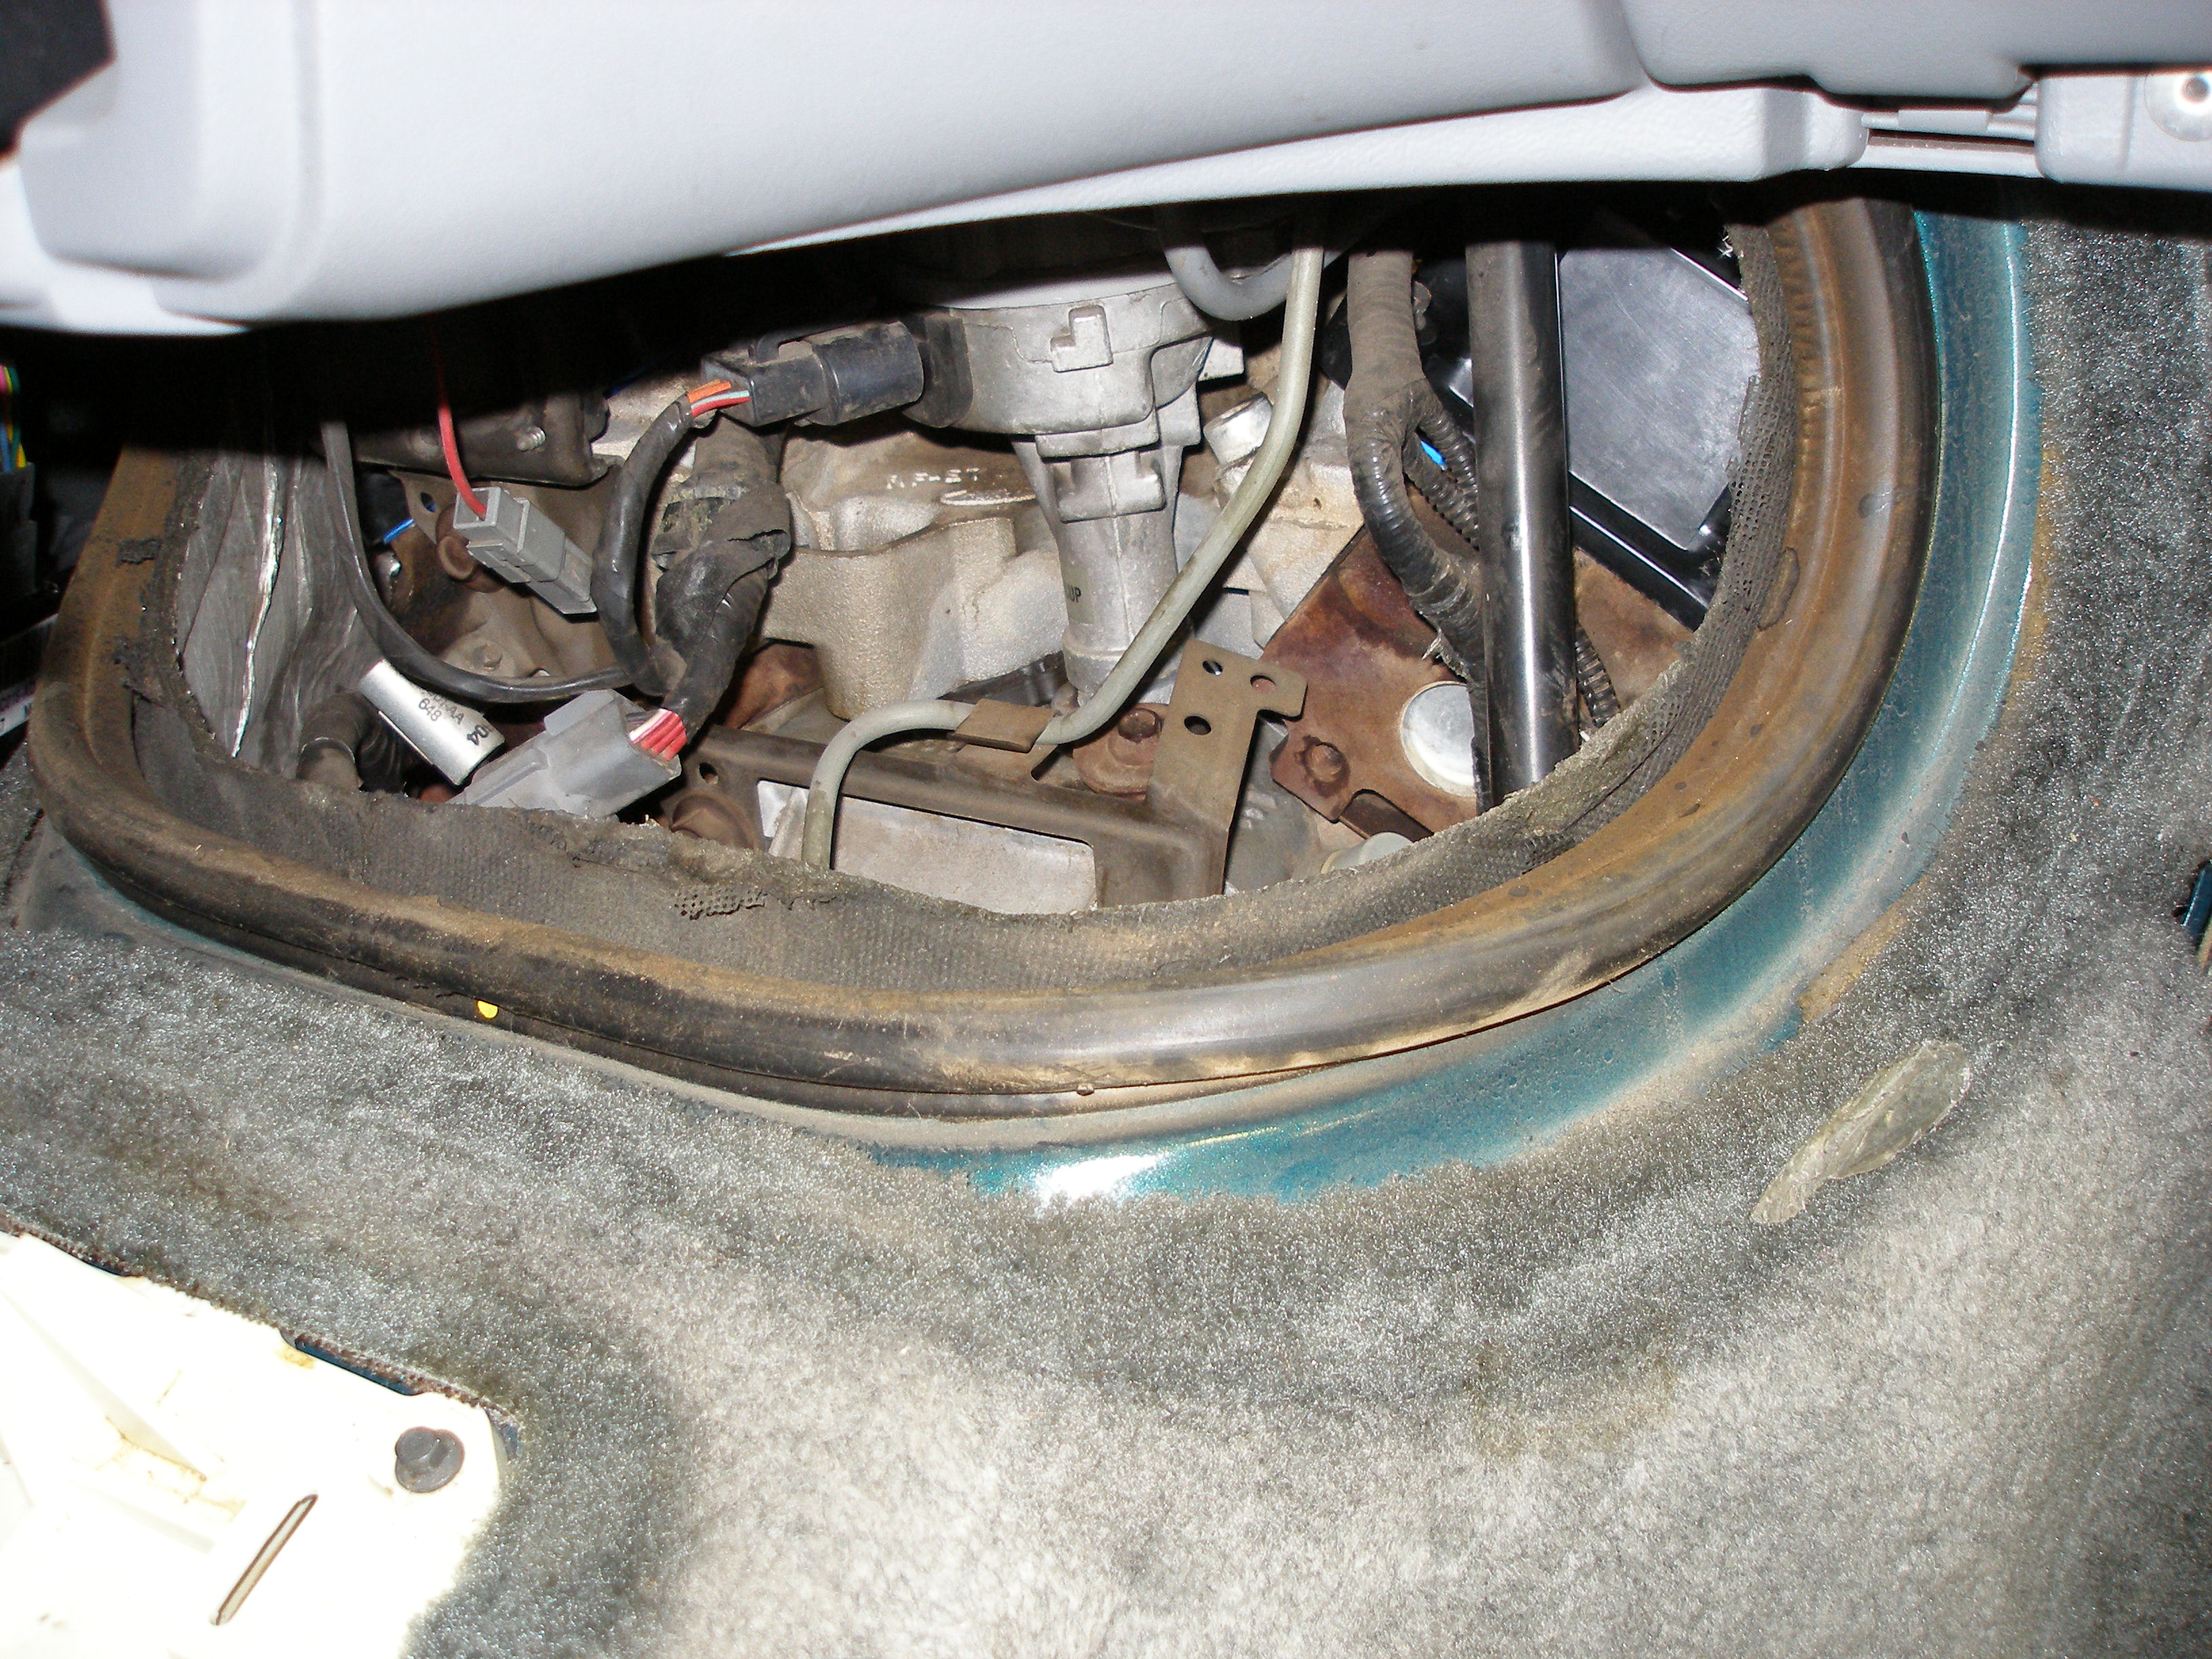 93 Ford aerostar transmission problems #4